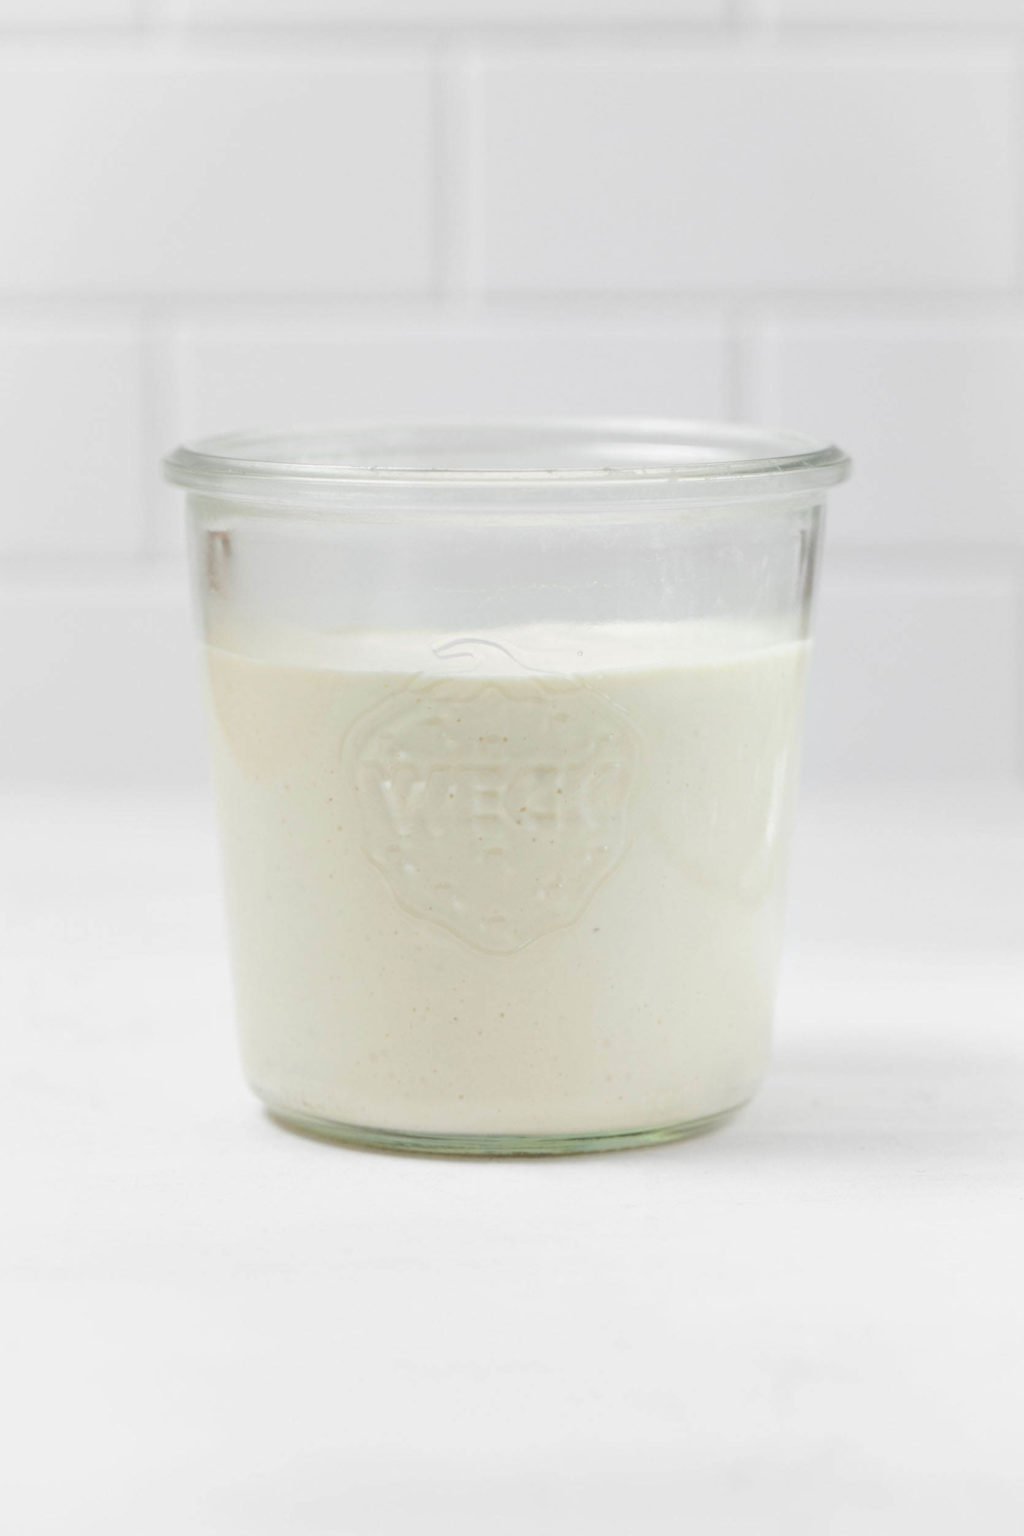 El frasco de vidrio contiene crema agria vegana de color blanco cremoso.  Se encuentra sobre una superficie blanca.